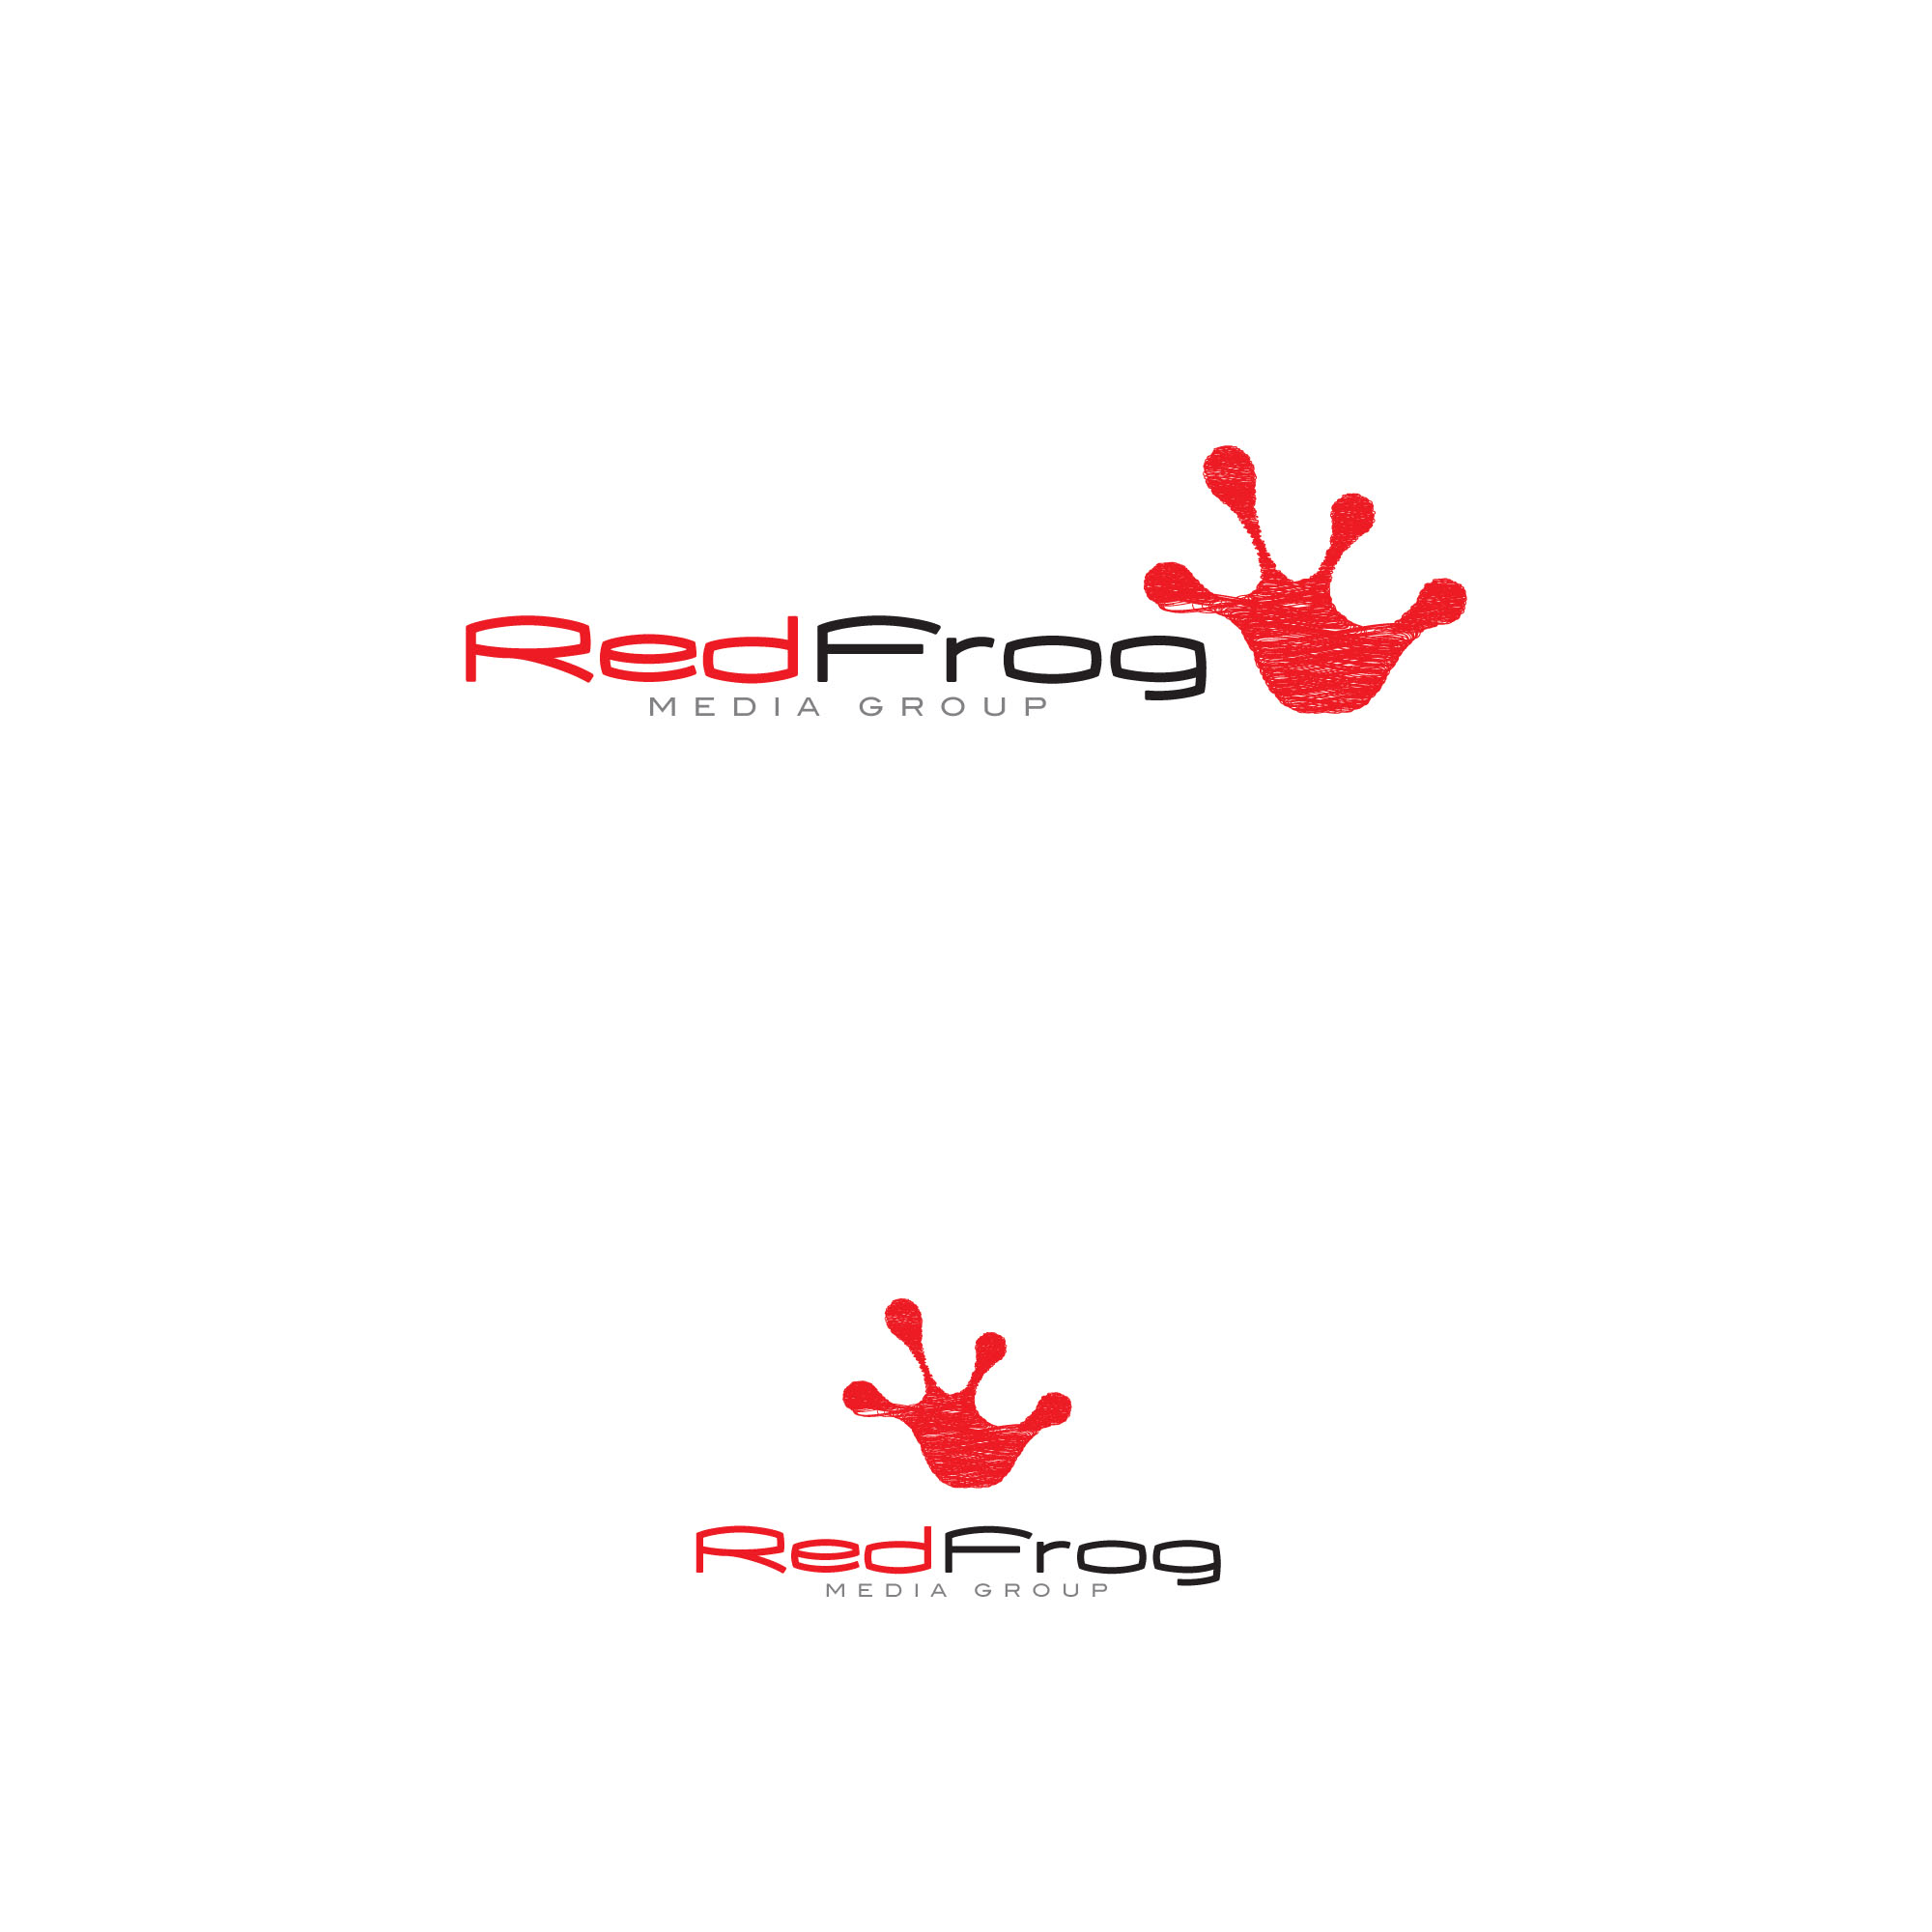 Red Designer Logo - Logo Design Contests » New Logo Design for Red Frog Media Group ...